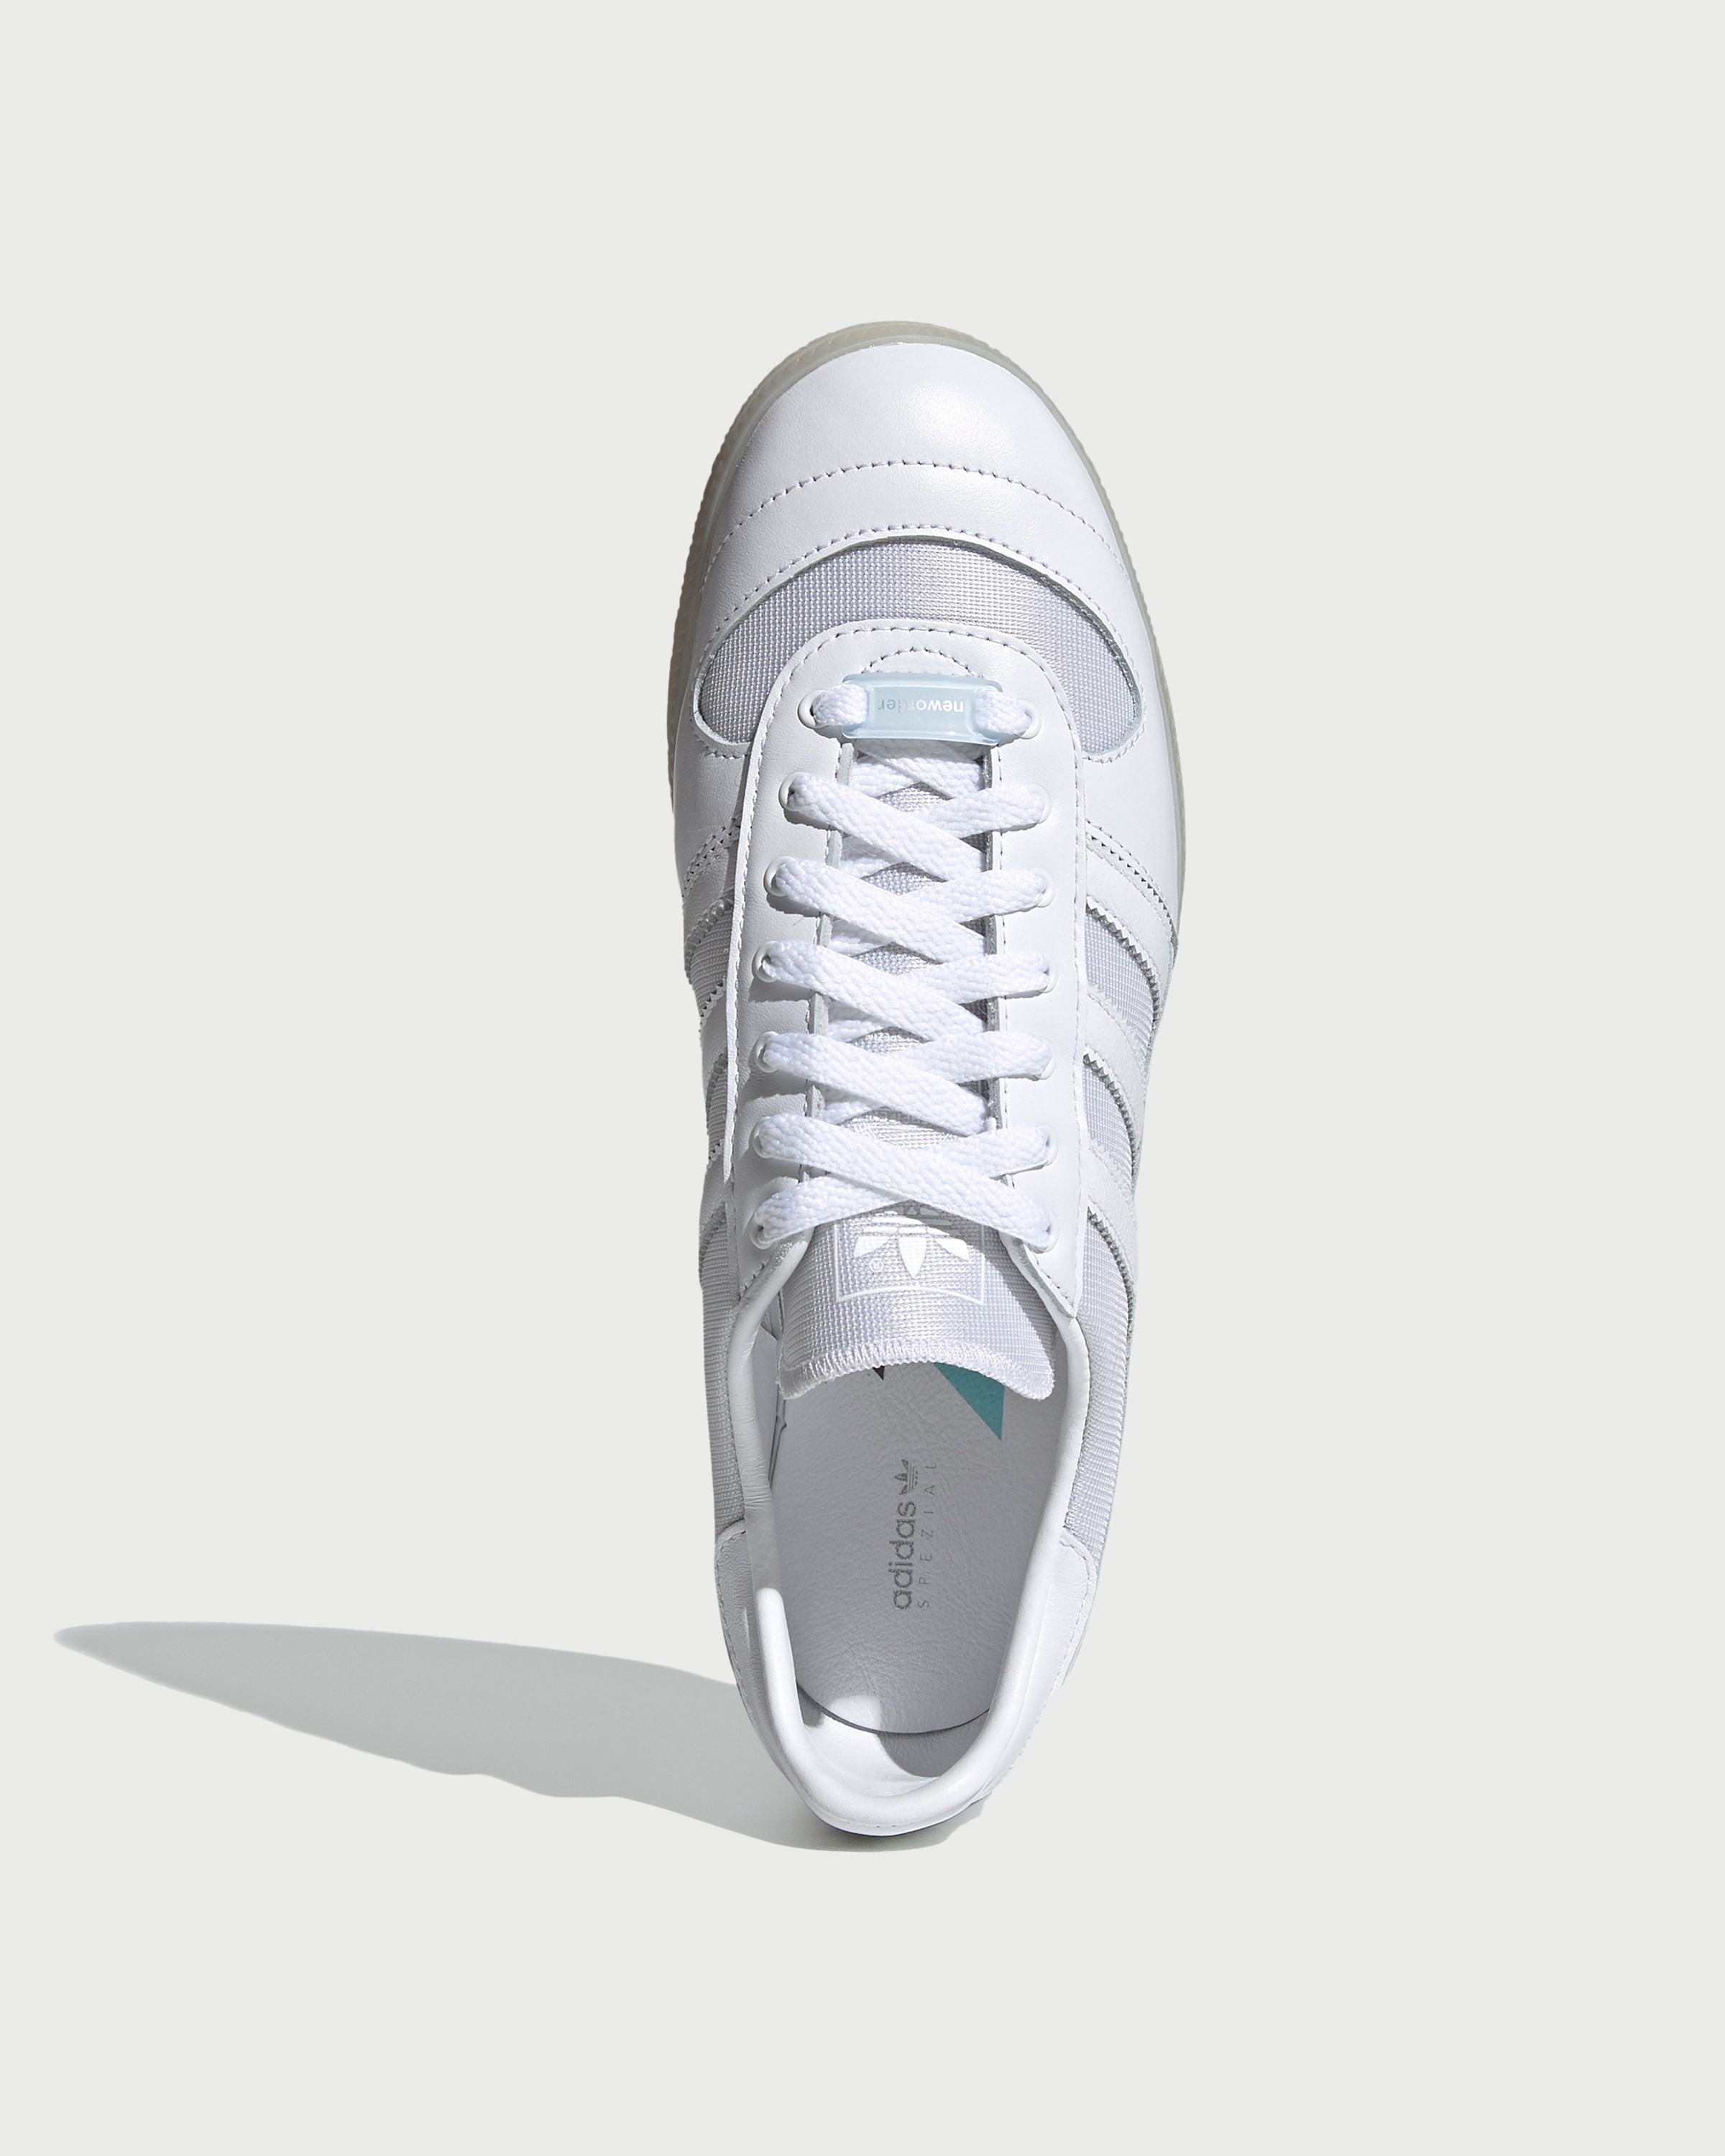 Adidas – Wilsy Spezial x New Order White - Sneakers - White - Image 3